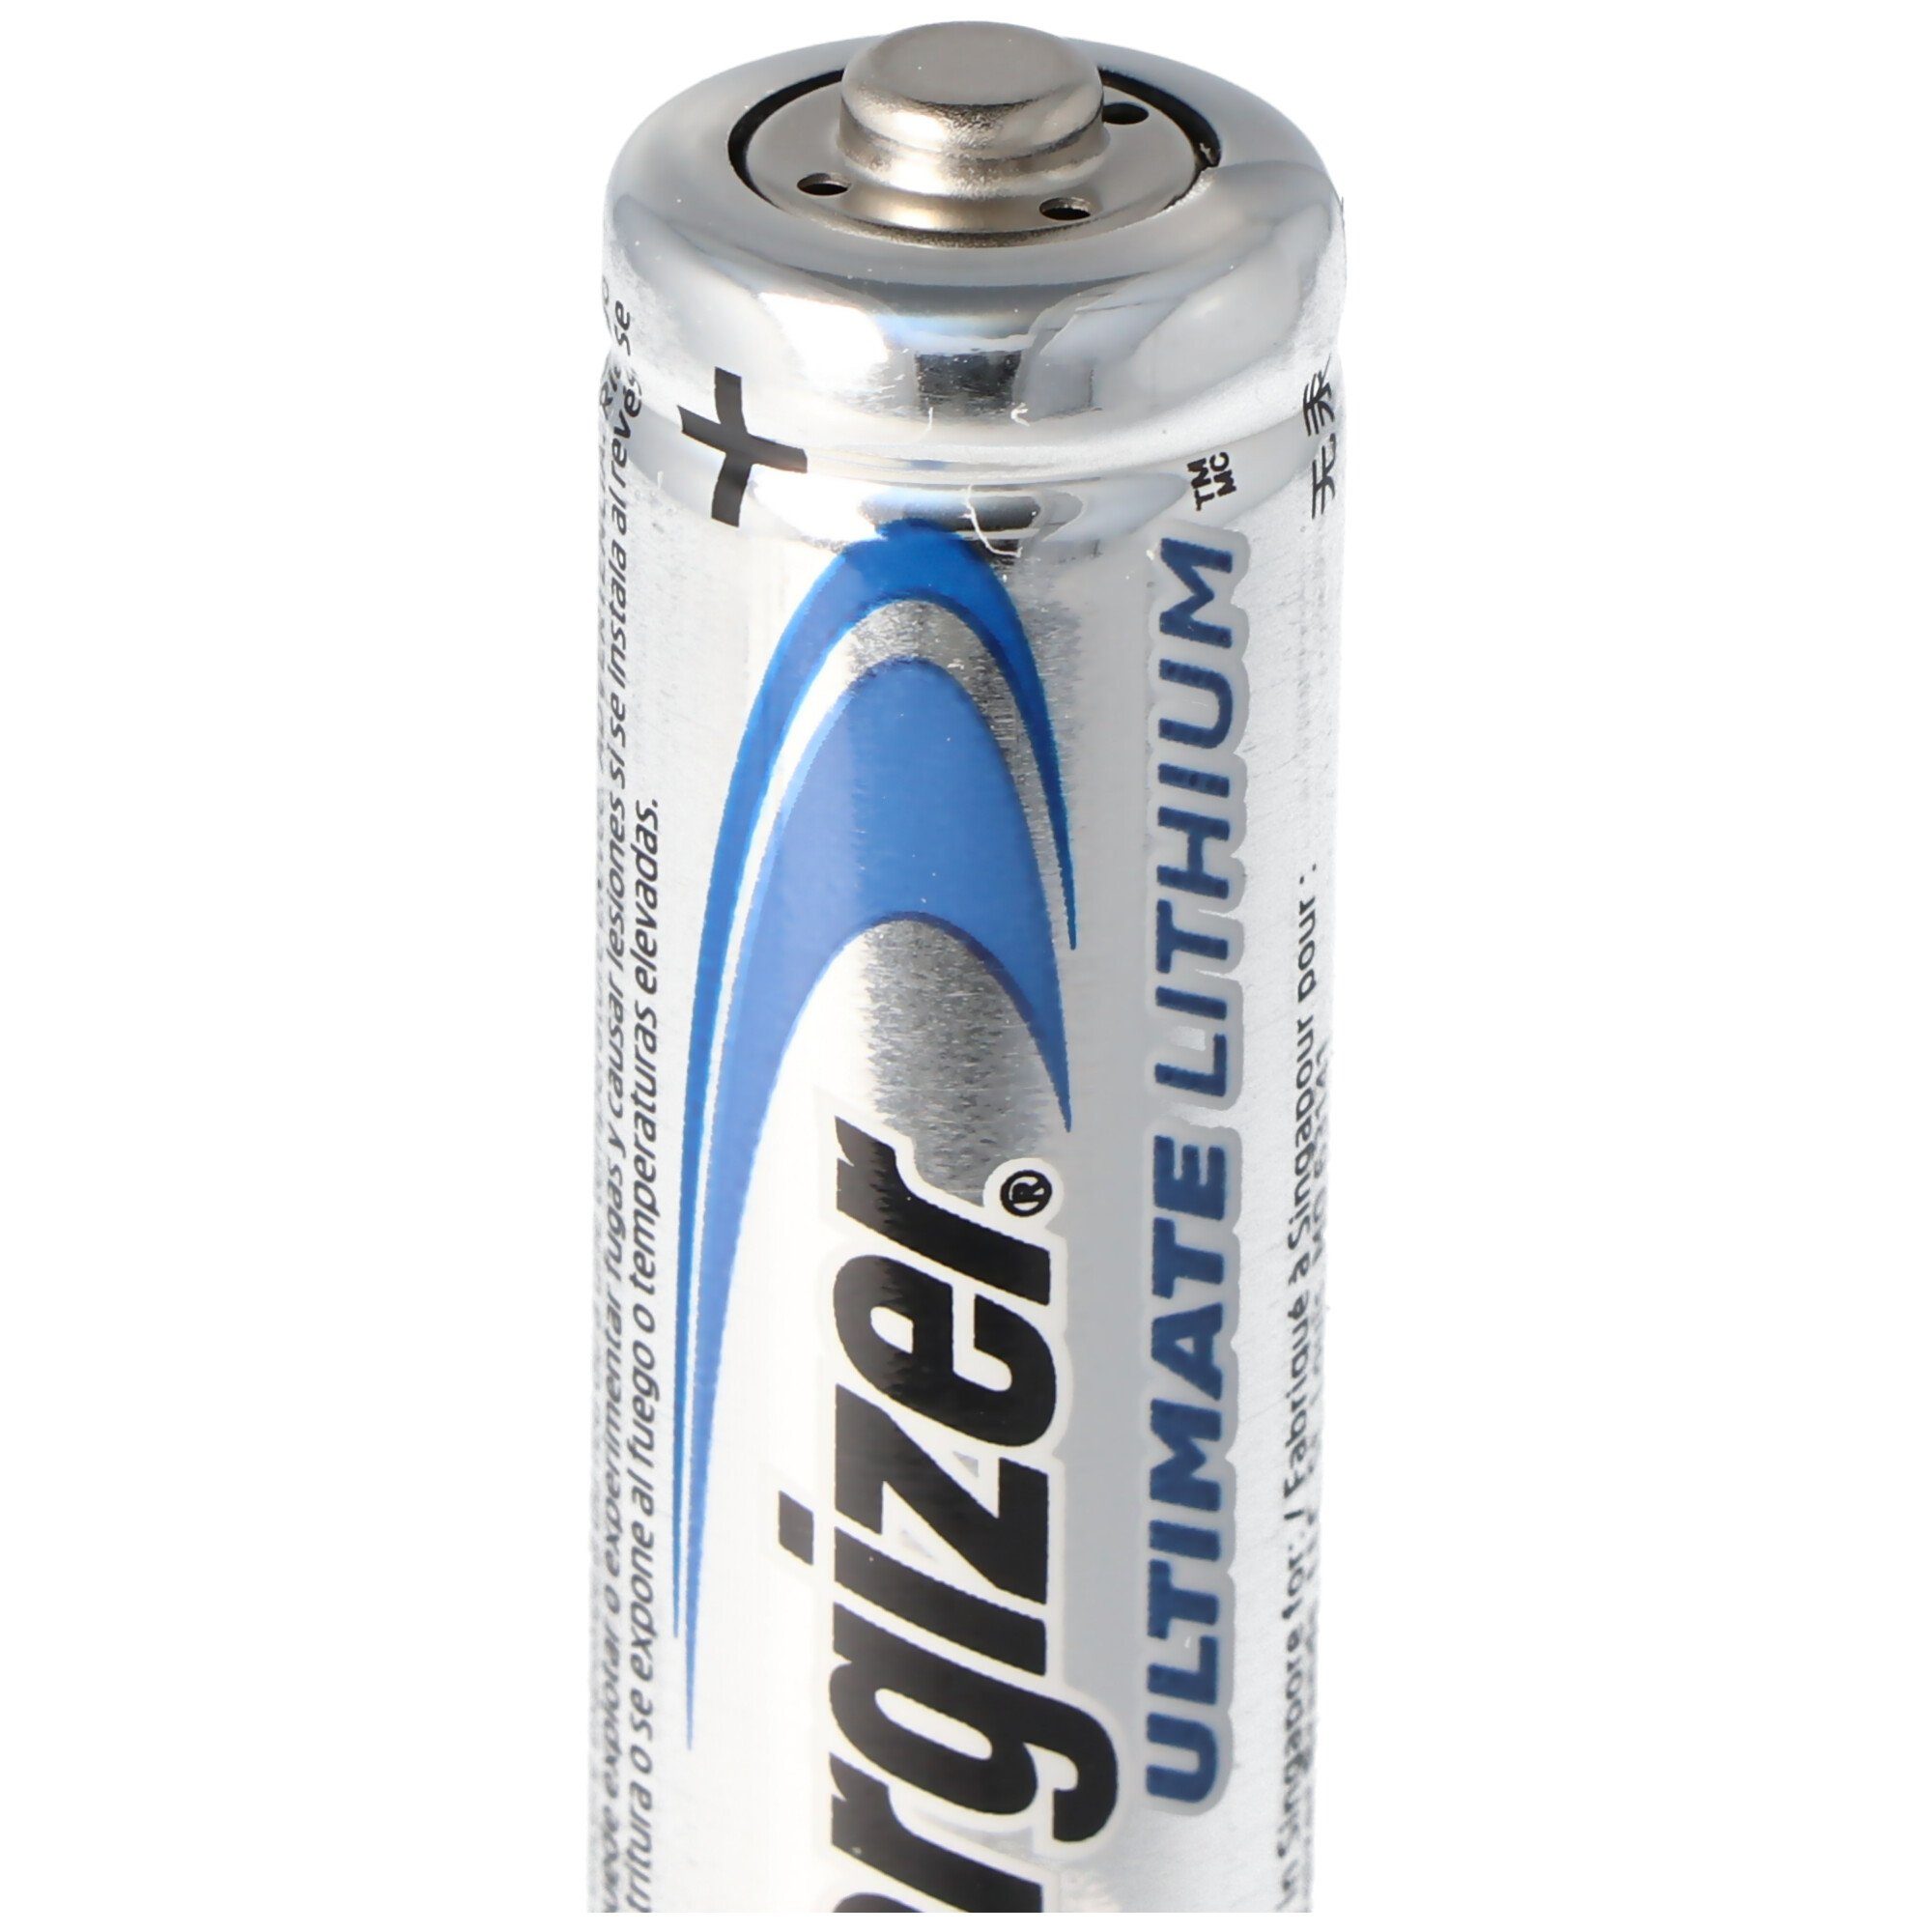 Fotobatterie, (1,5 L91 2er 3000mAh Blister Batterie V) 1,5 Lithium Energizer Volt, AA Energizer